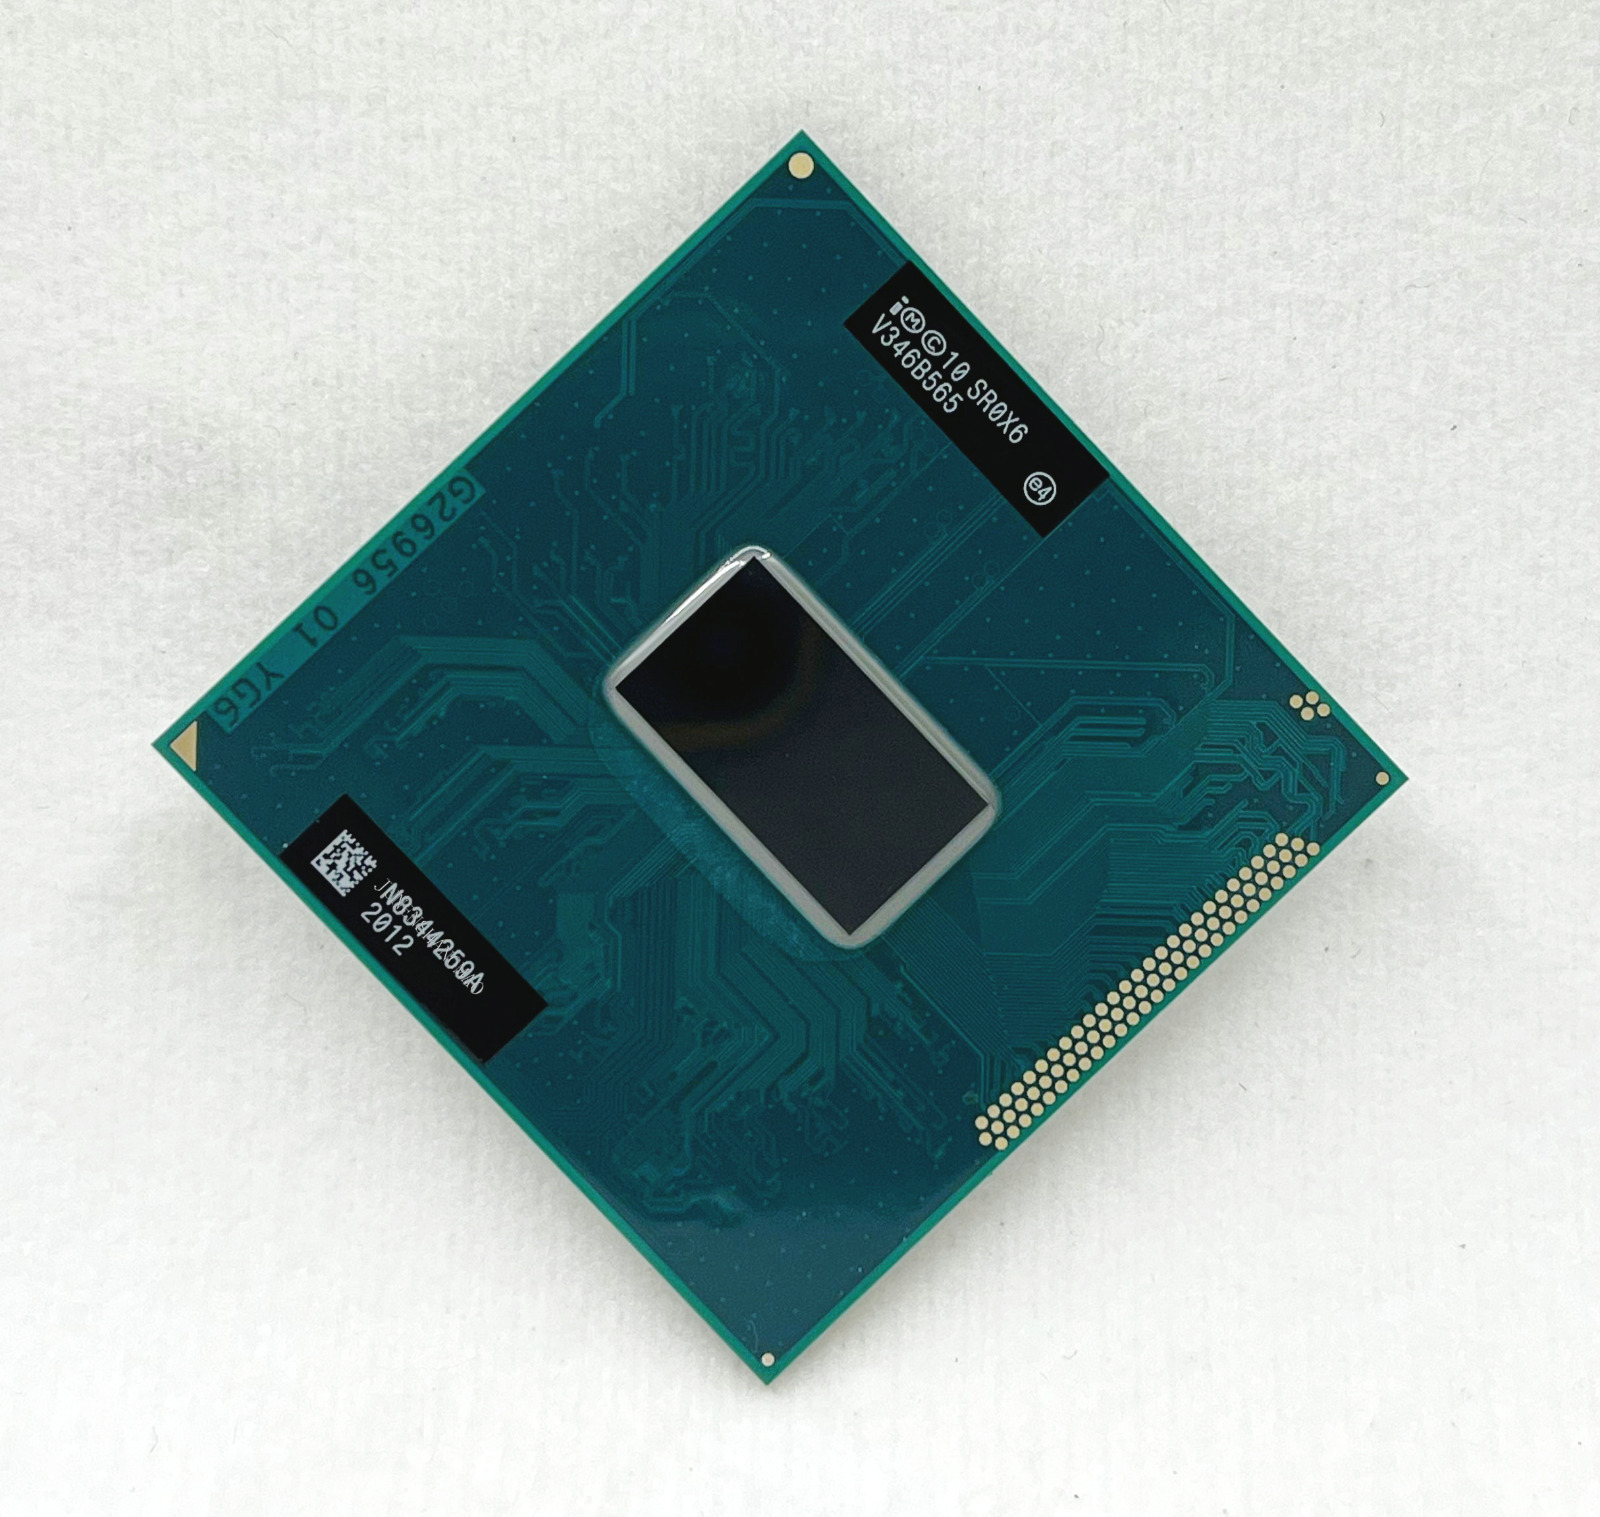 Intel Core i7 3540M SR0X6 3.0GHz 4MB Dual-core rPGA988B Notebook Processor